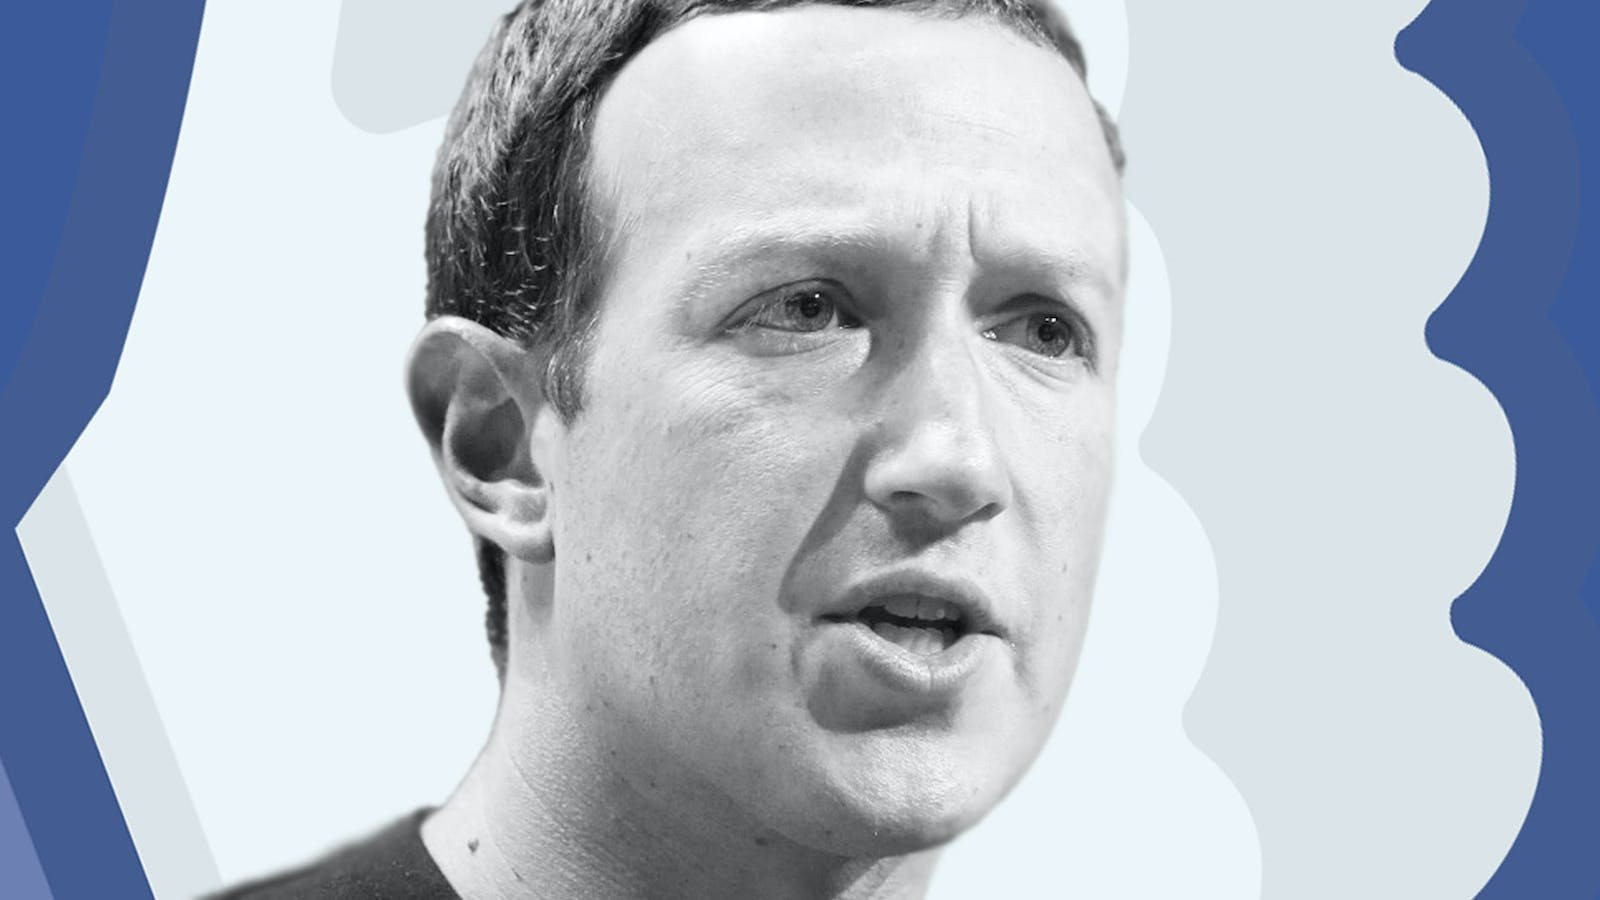 Chuỗi ngày đen tối của Mark Zuckerberg: Mỗi sáng thức dậy cảm giác như 'bị đấm vào bụng', đốt chục tỷ USD vào vũ trụ ảo chỉ tạo ra những thứ 'nực cười' - Ảnh 4.